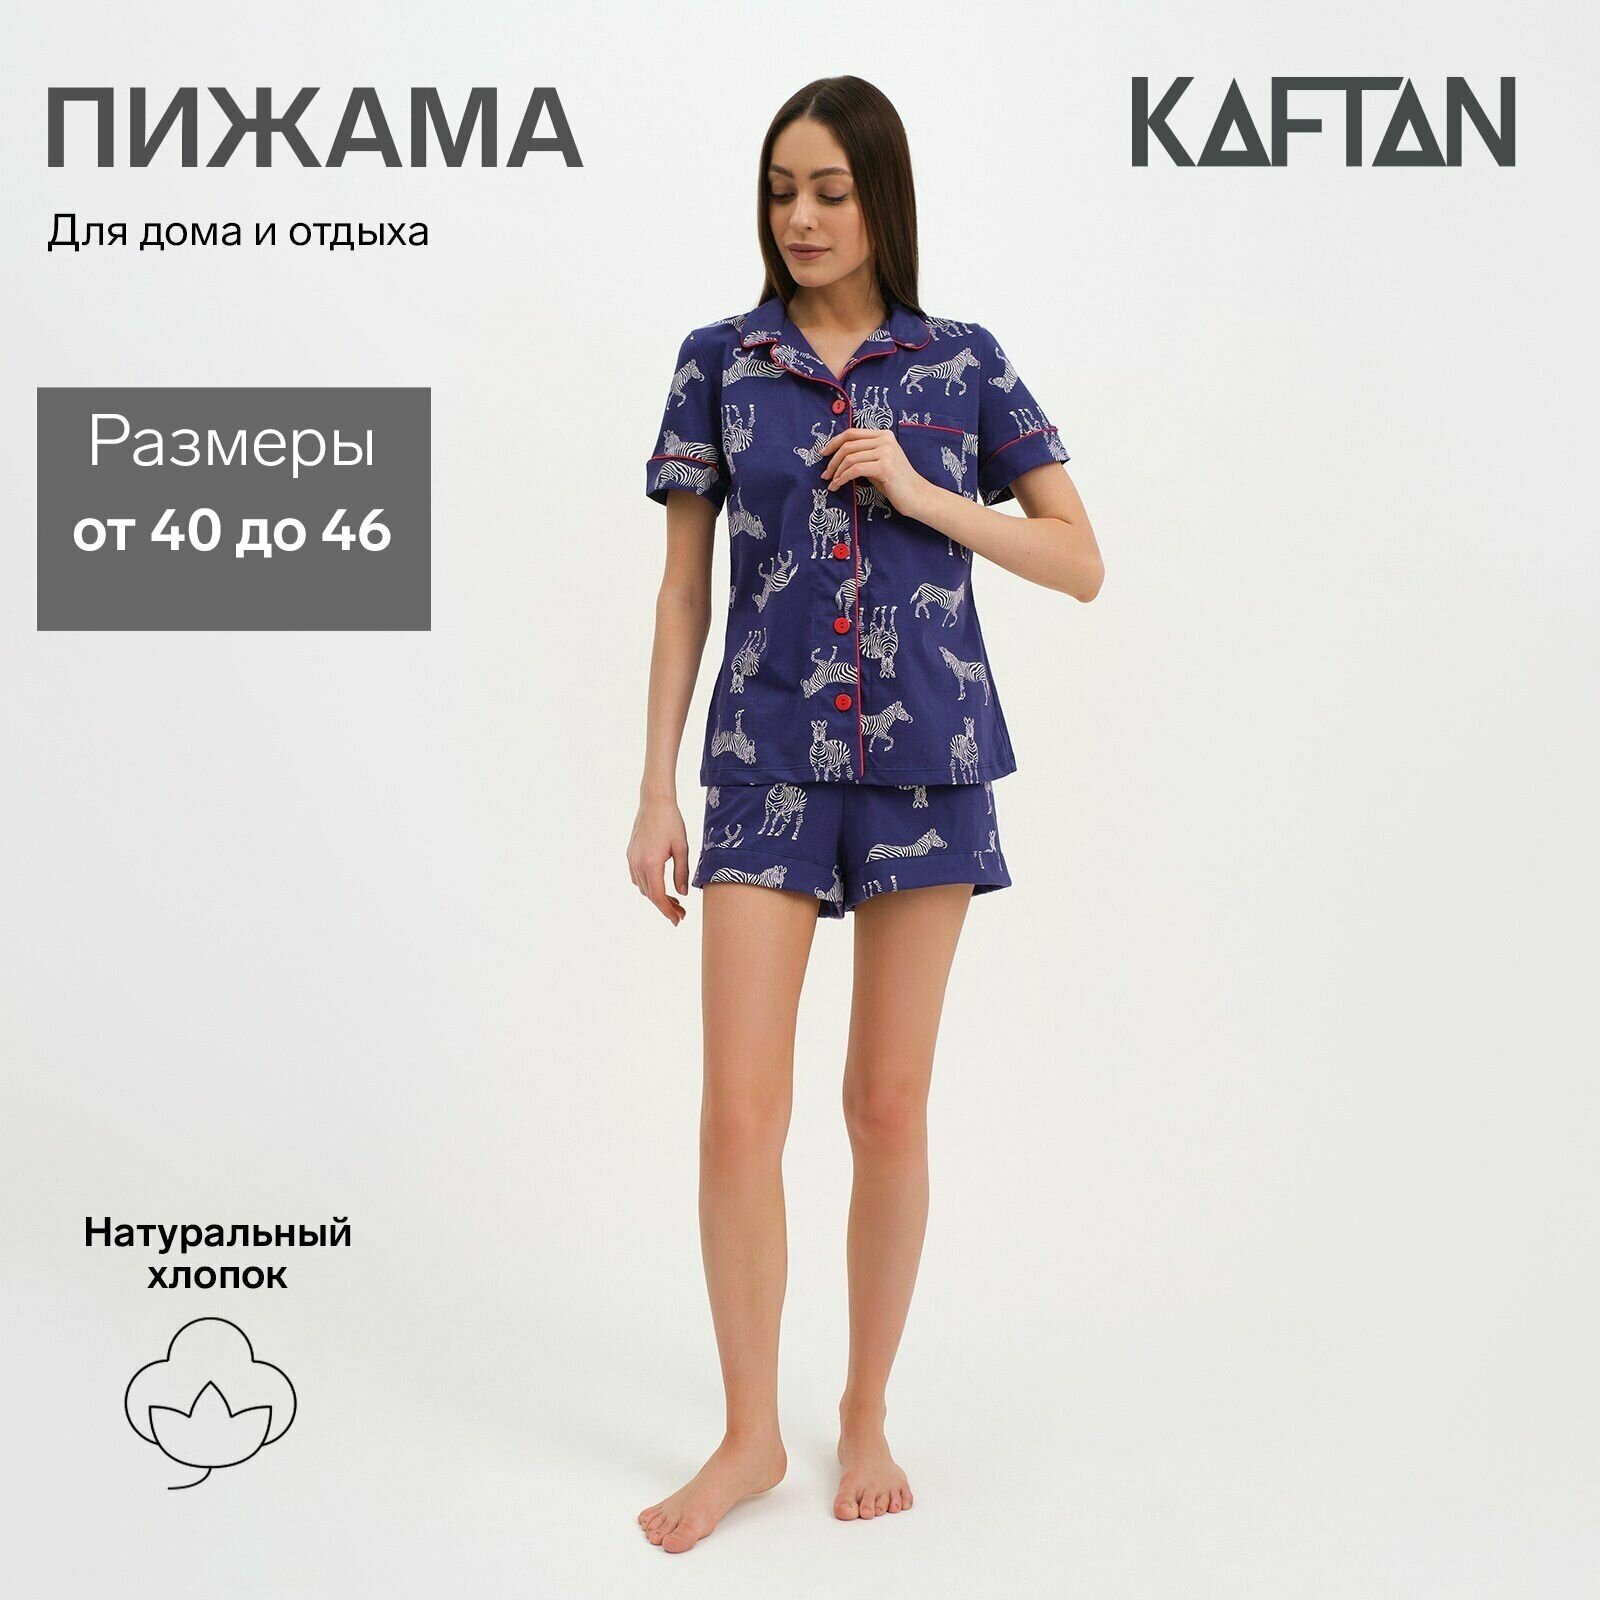 Пижама Kaftan, короткий рукав, размер 42, синий - фотография № 1